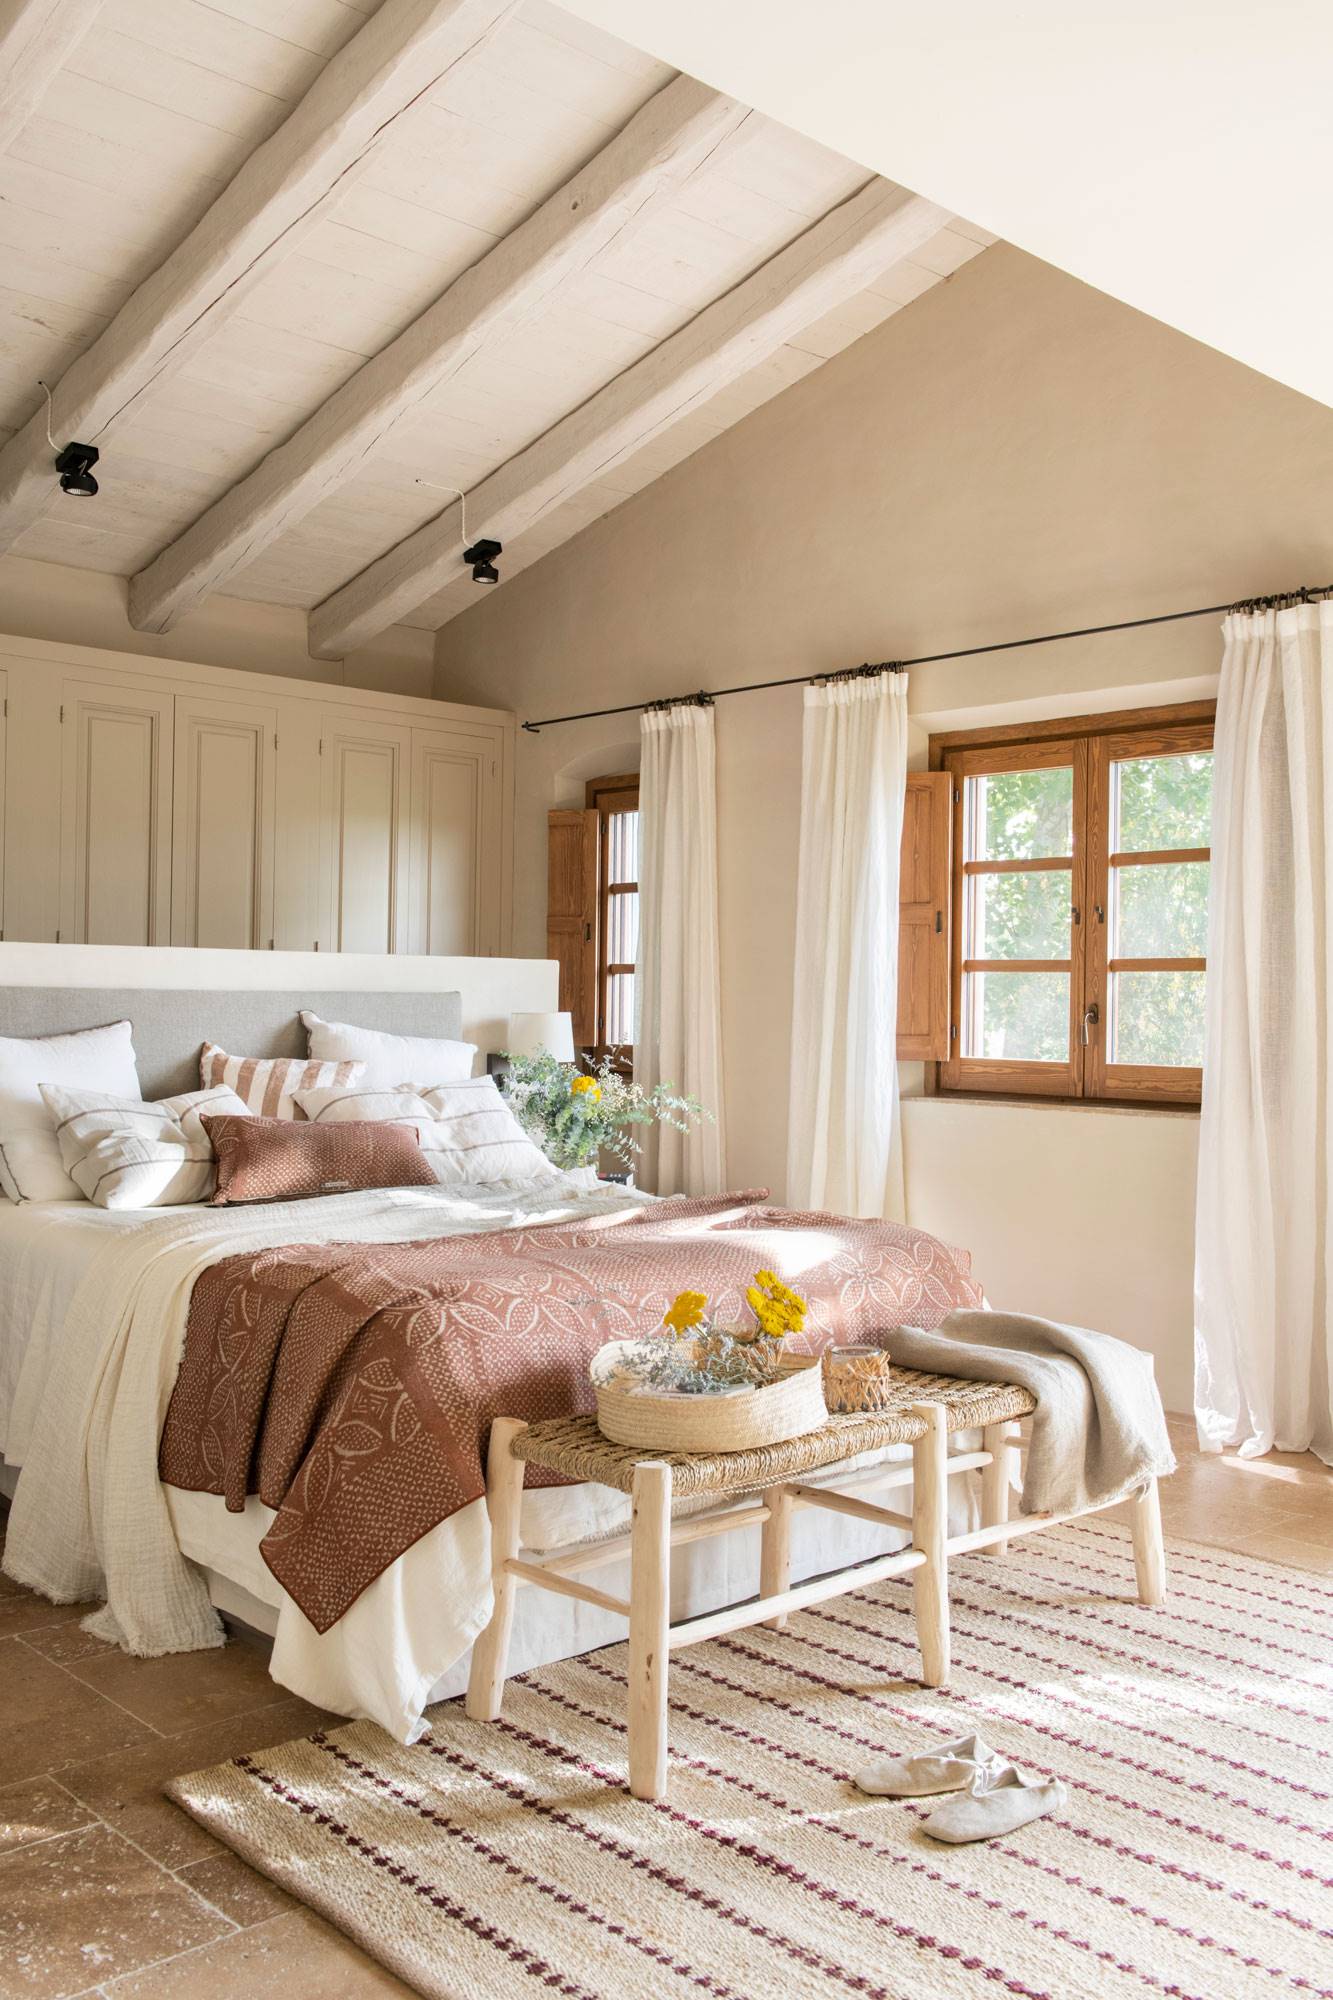 Dormitorio abuhardillado con el techo pintado de blanco.